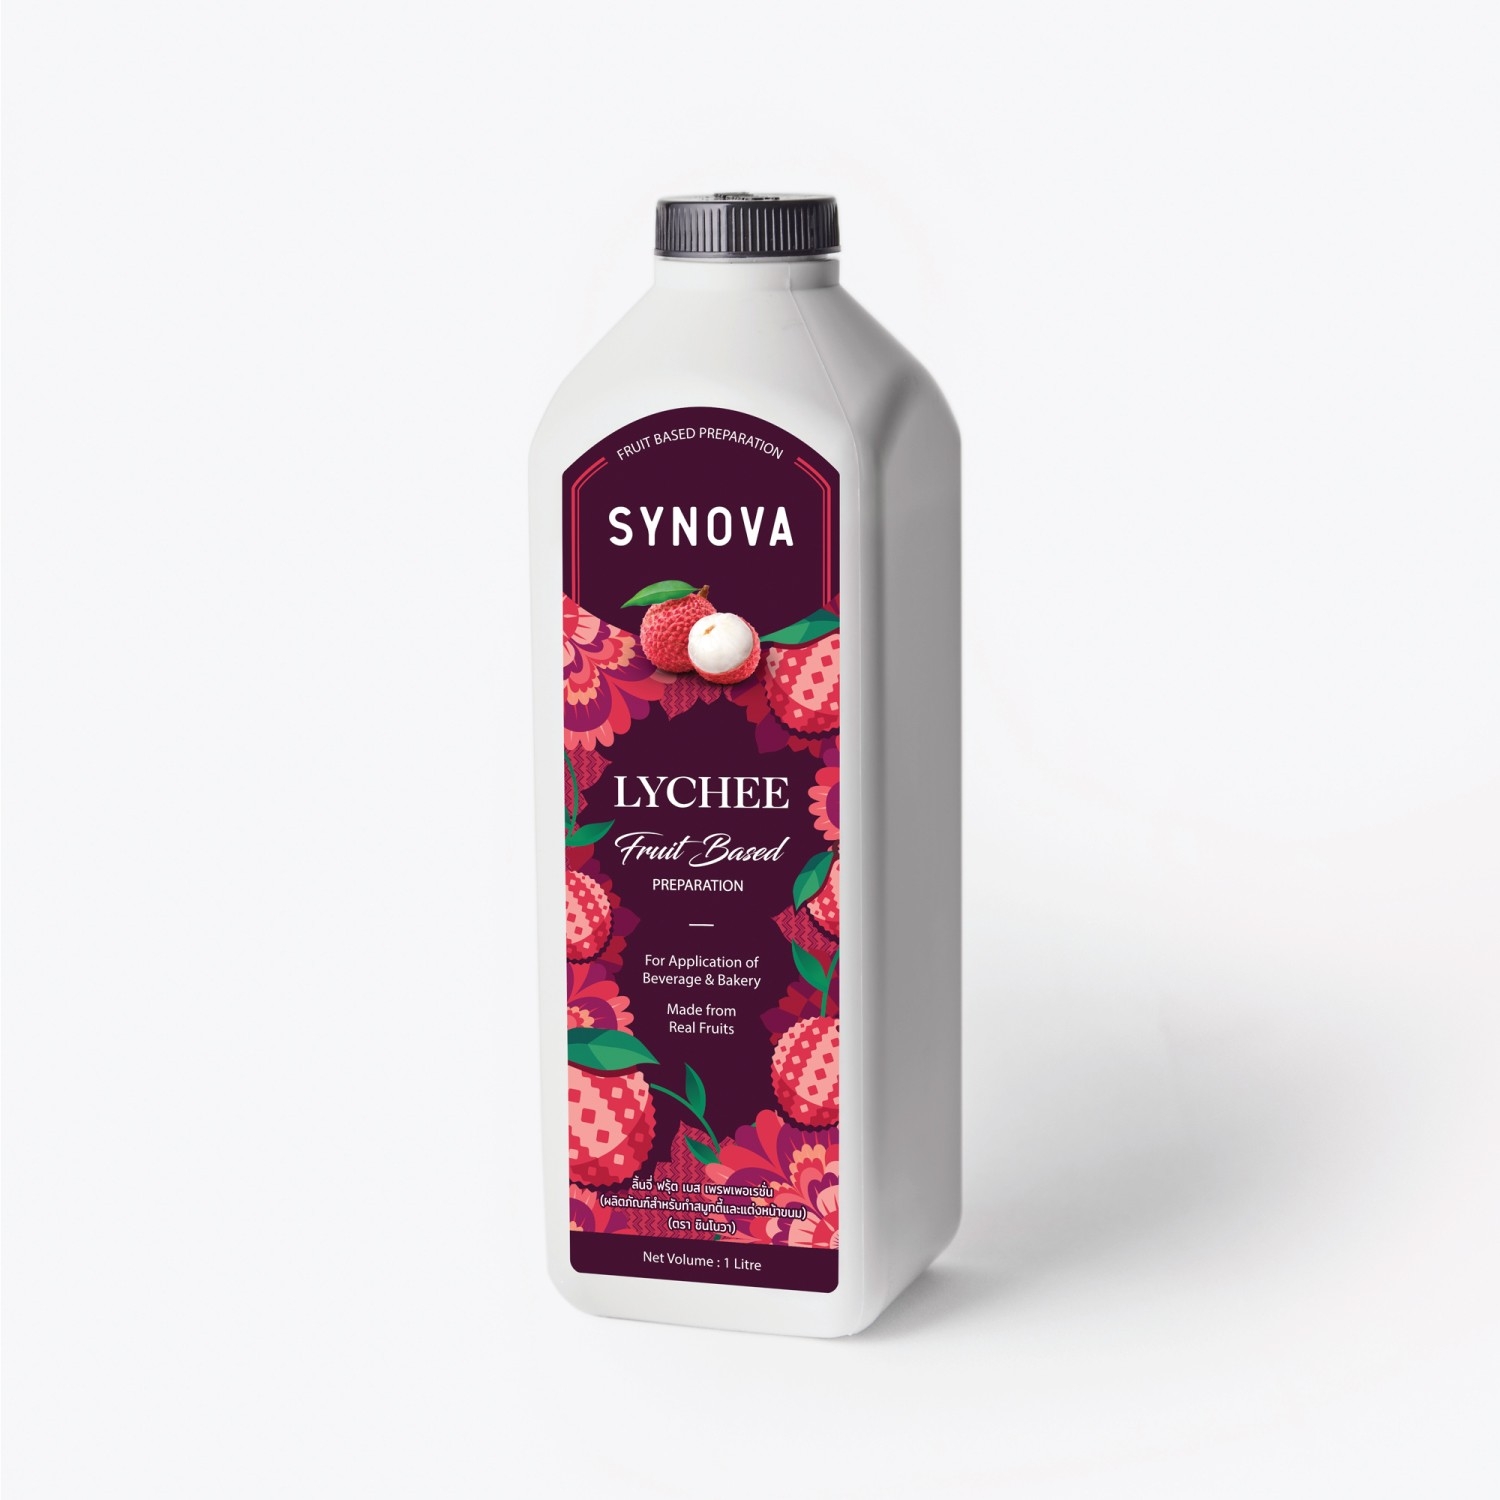 น้ำผลไม้เข้มข้น : SYNOVA ซอสลิ้นจี่เข้มข้น (ขวด)